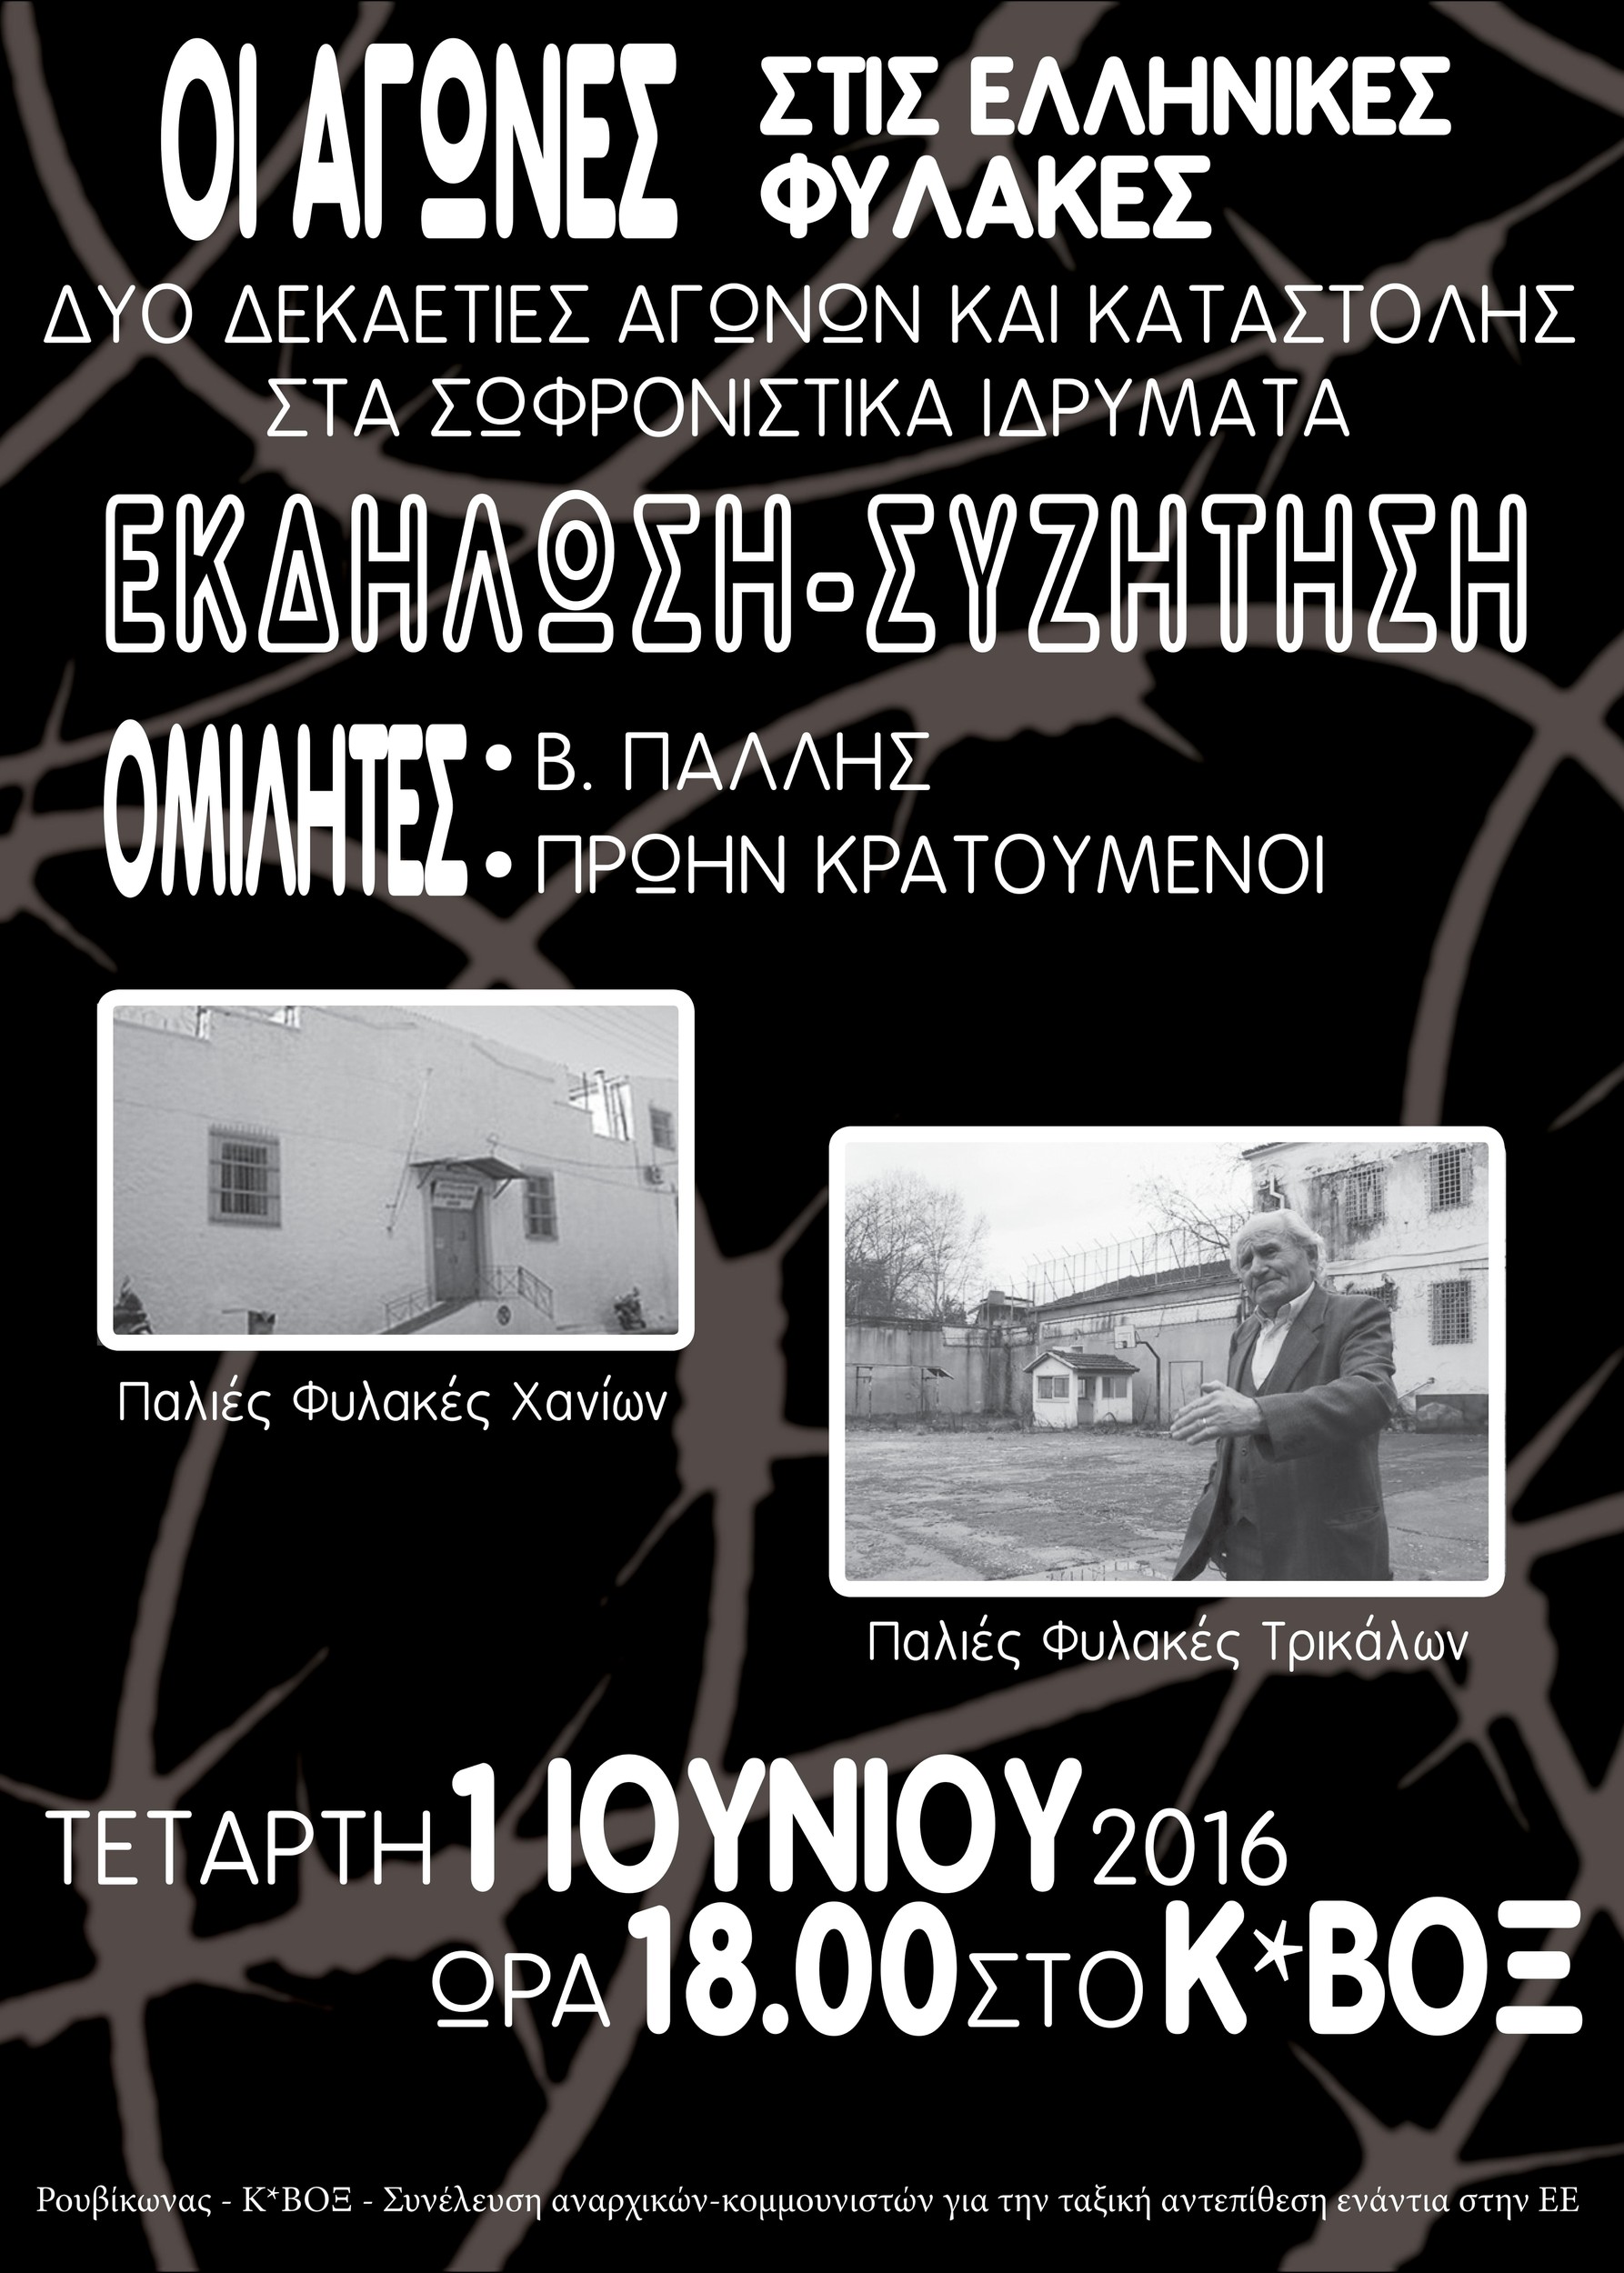 Οι αγώνες στις ελληνικές φύλακες-εκδήλωση